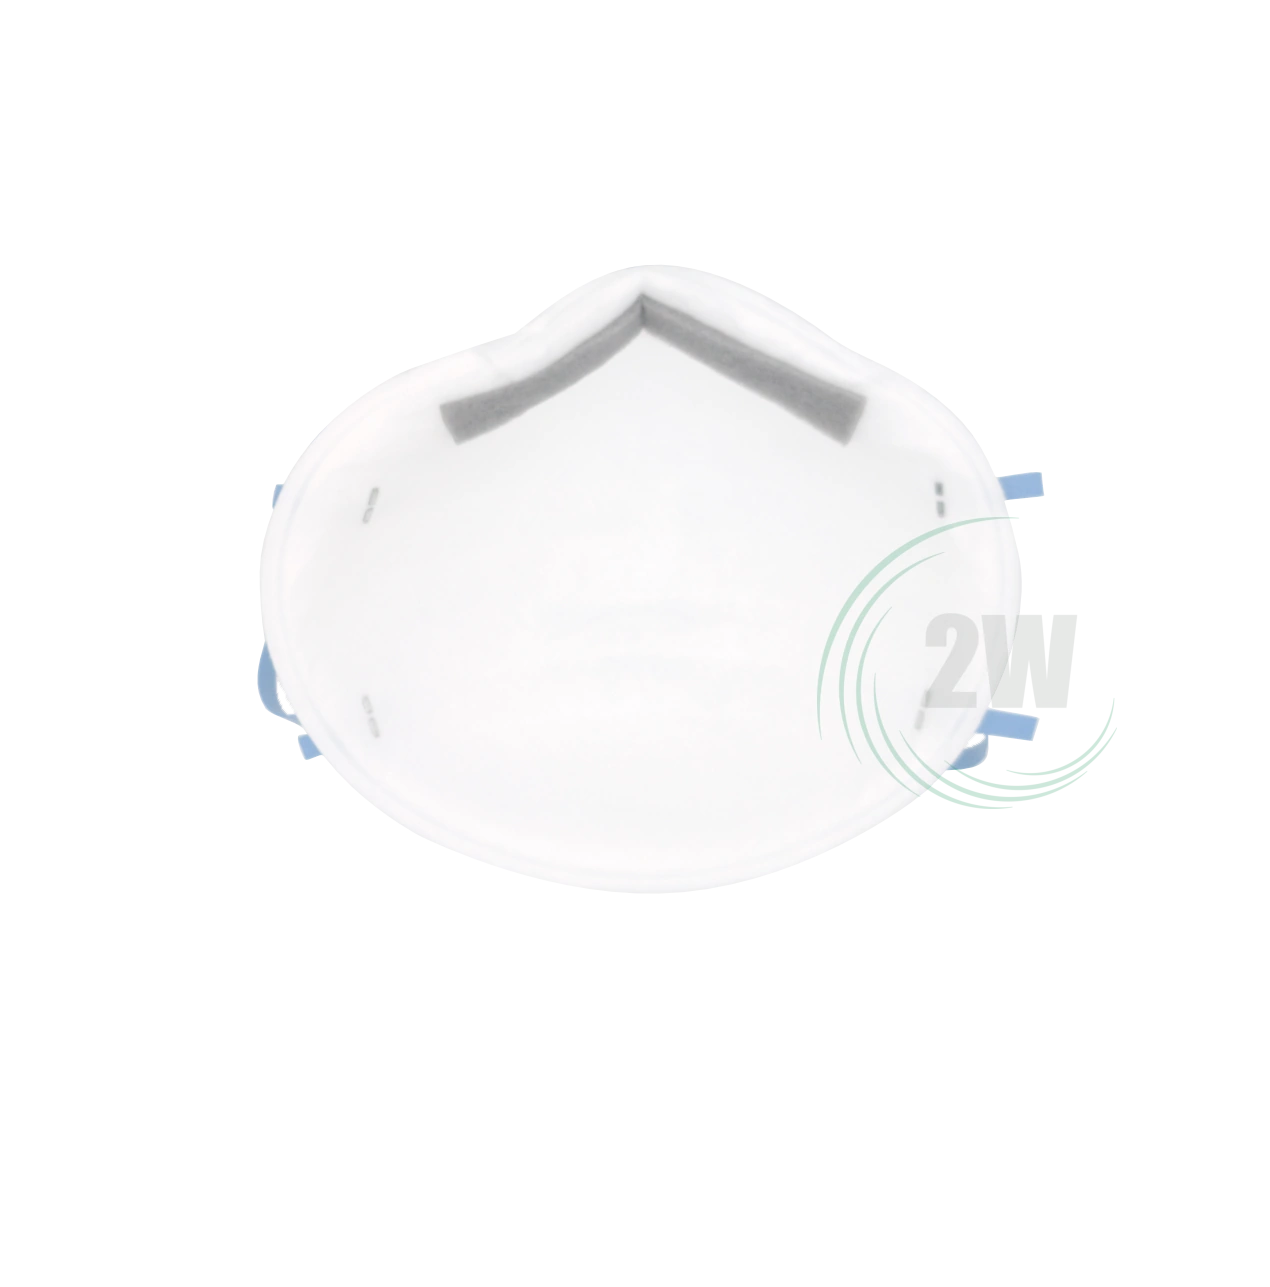 3M 8810 Atemschutzmaske ohne Ventil Vorgeformt FFP2 NR D (20 Stück)